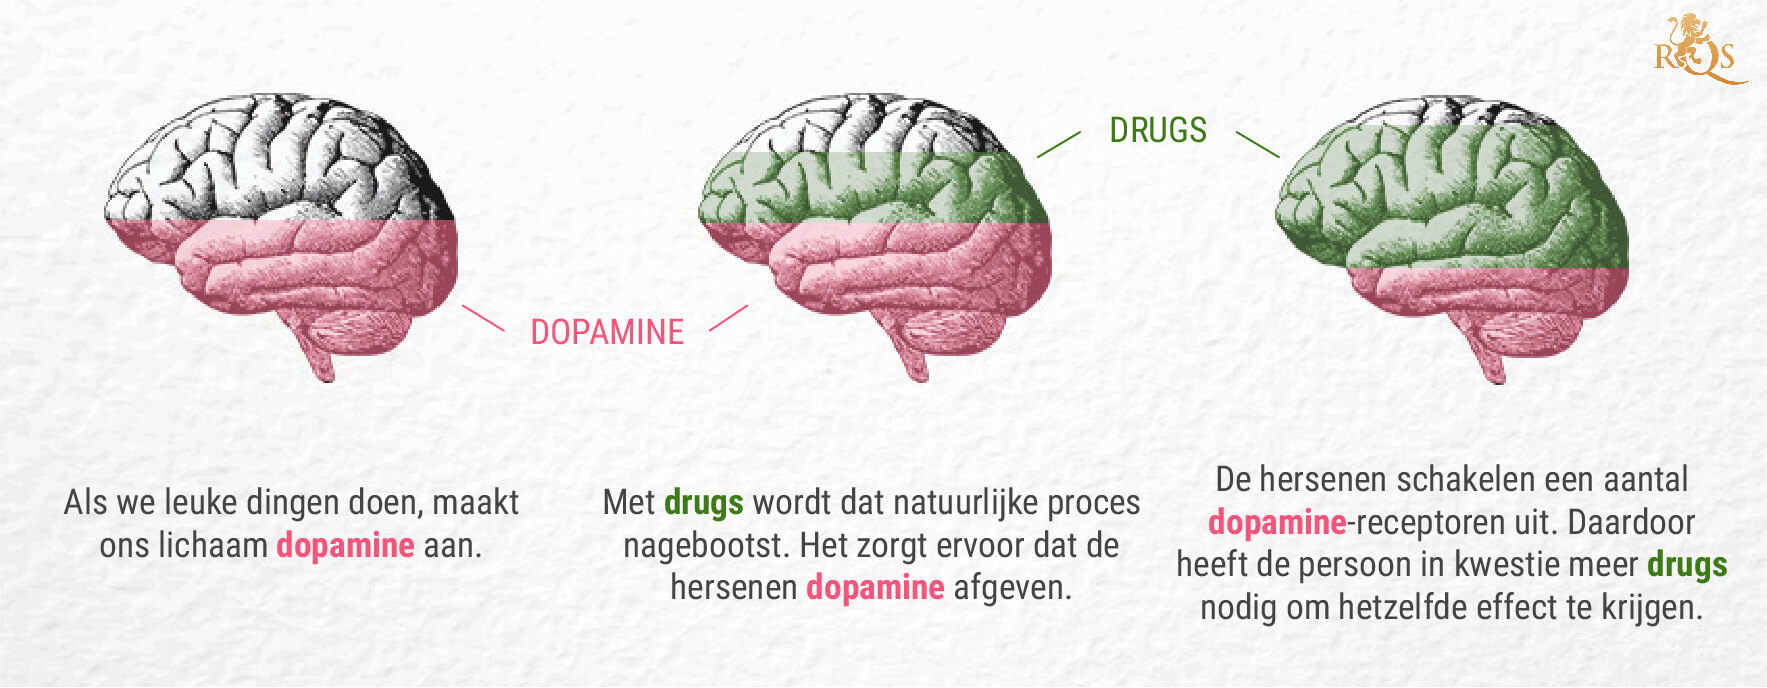 Wat is de link tussen wiet en dopamine?